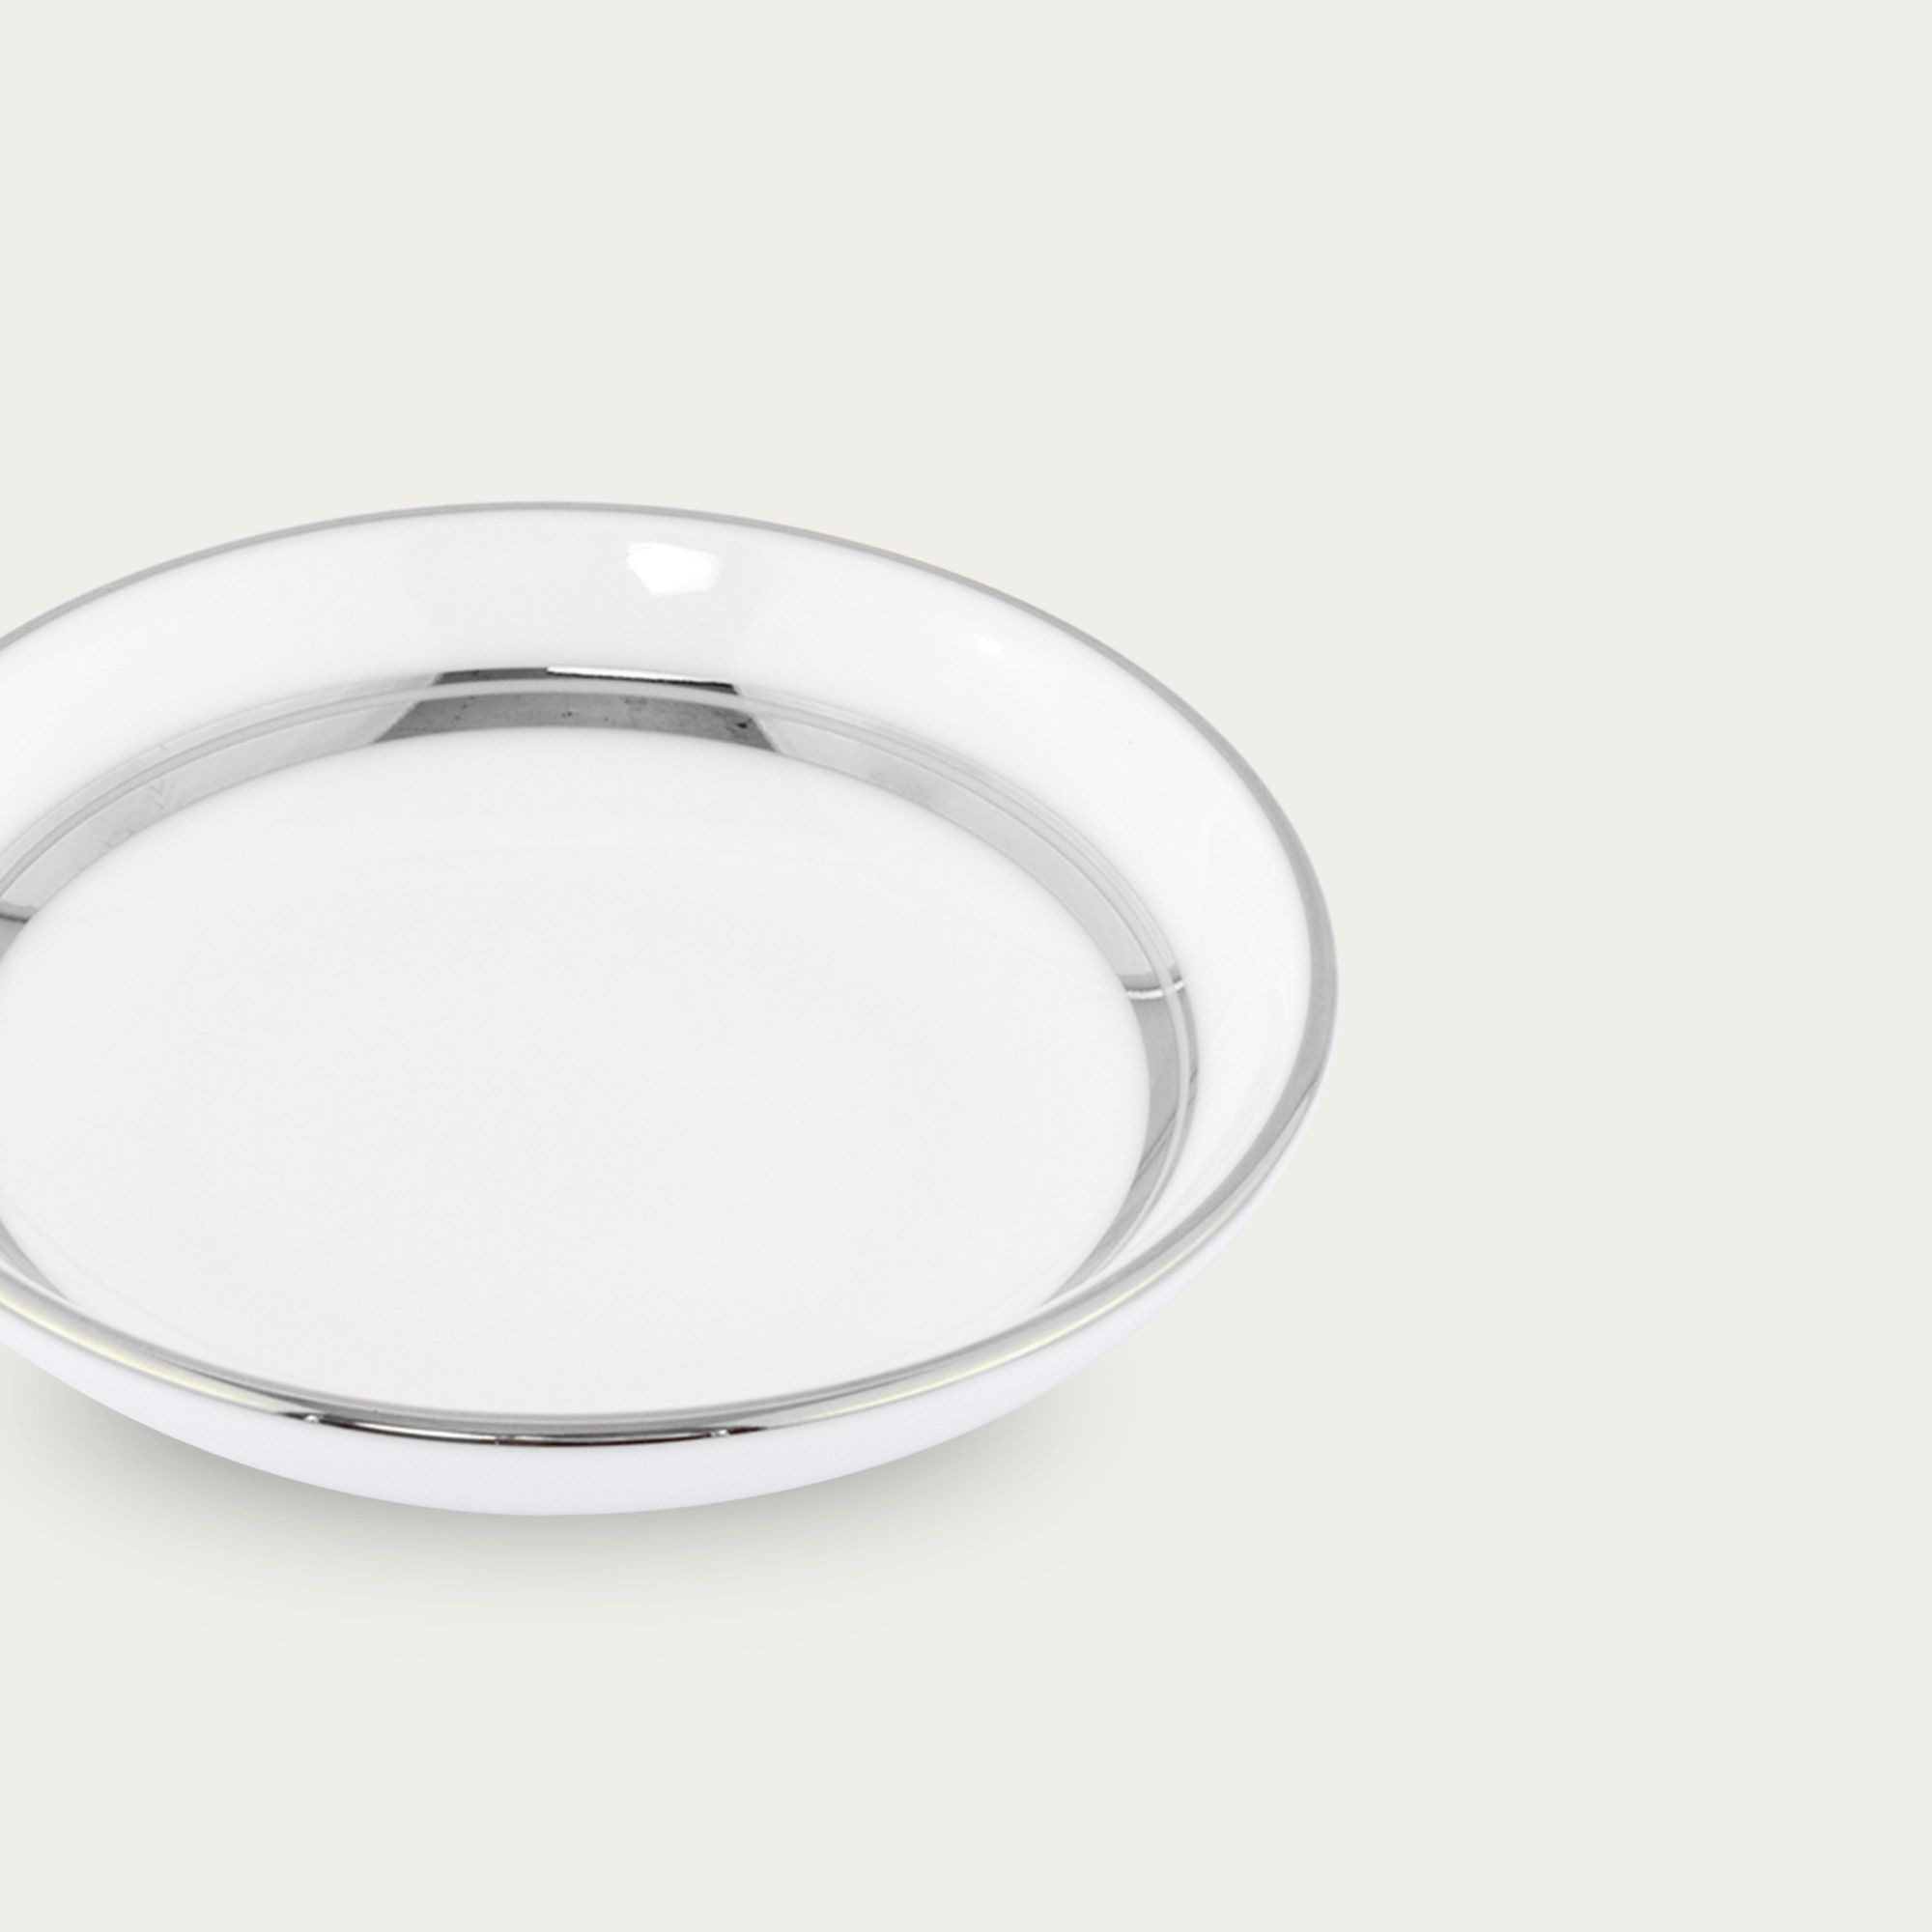  Đĩa đựng nước chấm, gia vị đường kính 9,8cm sứ trắng | Galaxy L554L - 91419 